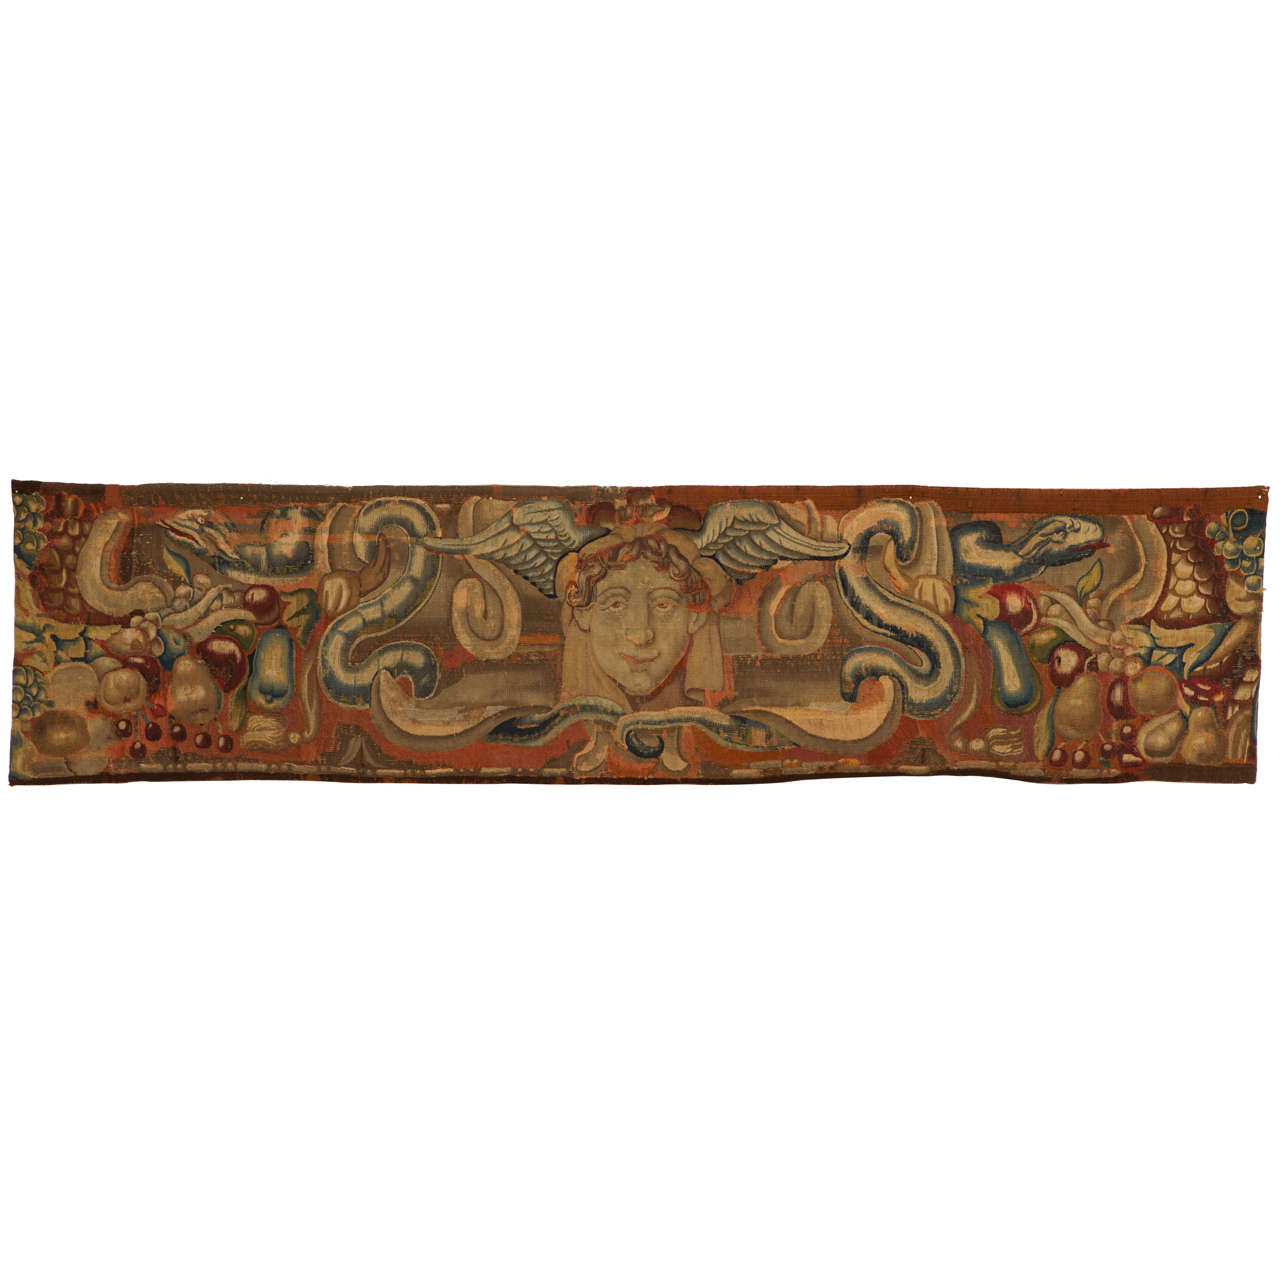 Panneau de tapisserie flamand du début du 17ème siècle représentant Mercure en vente